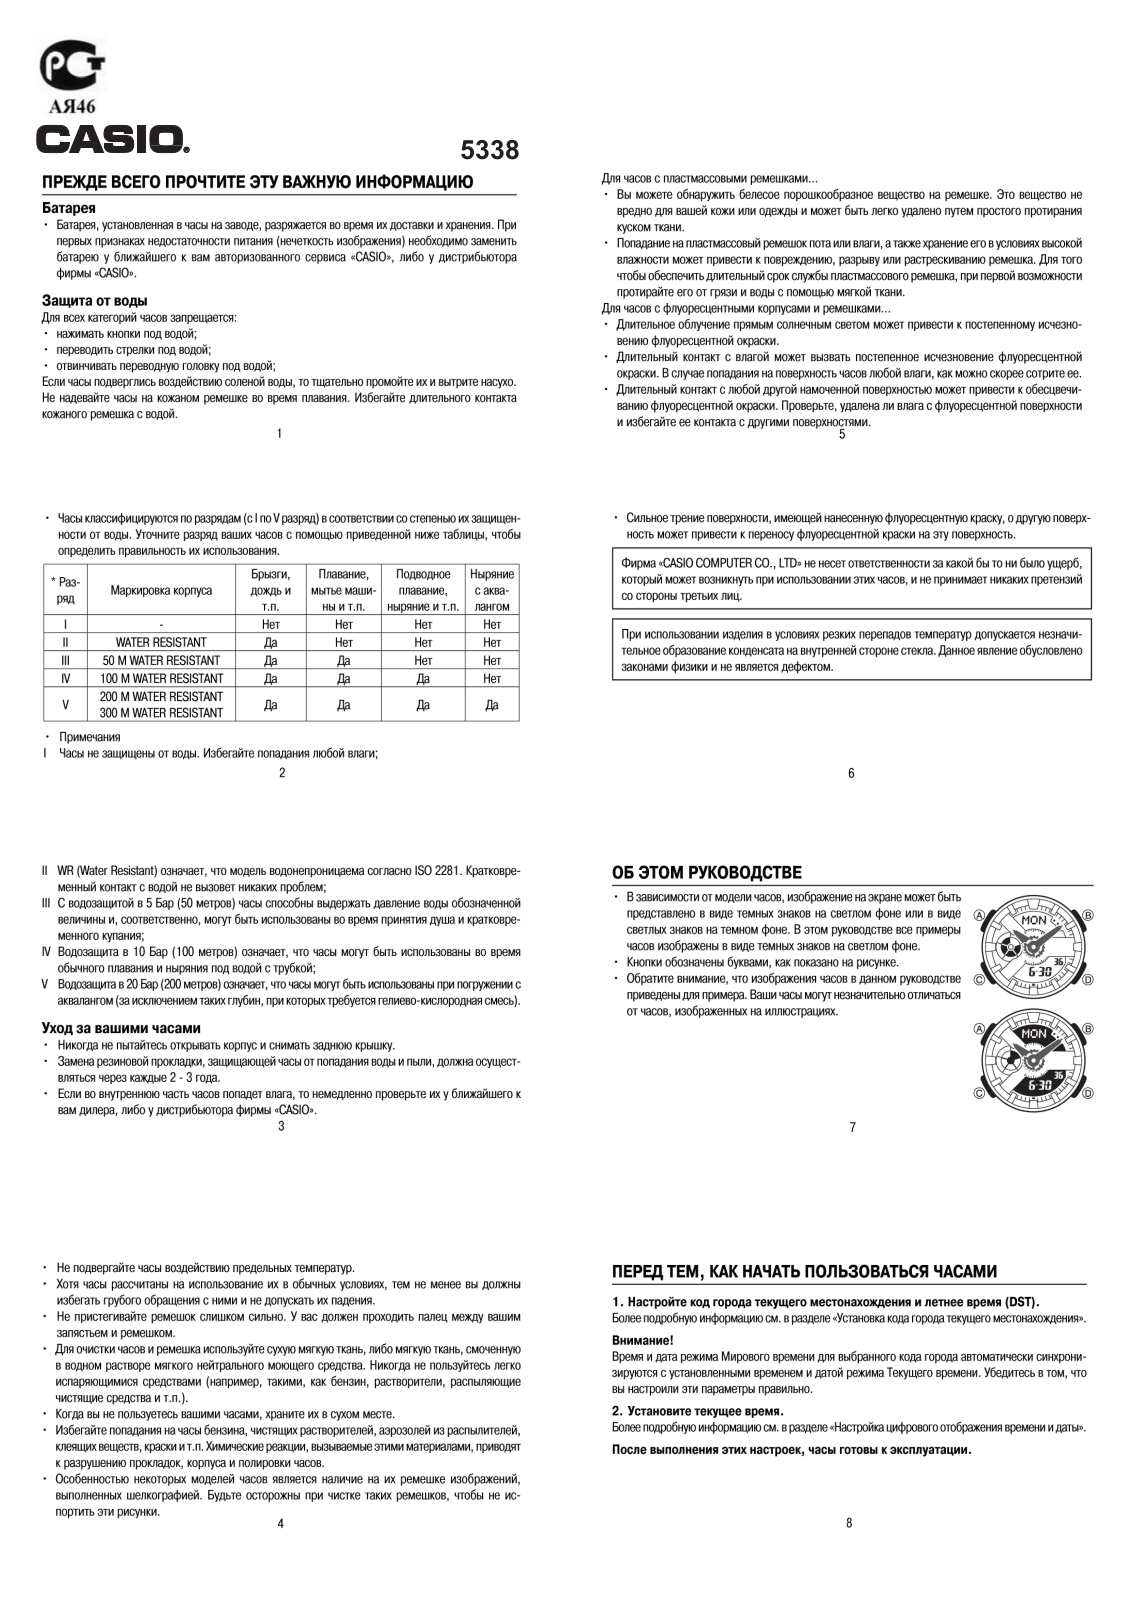 Casio BA-110TP-7A User Manual